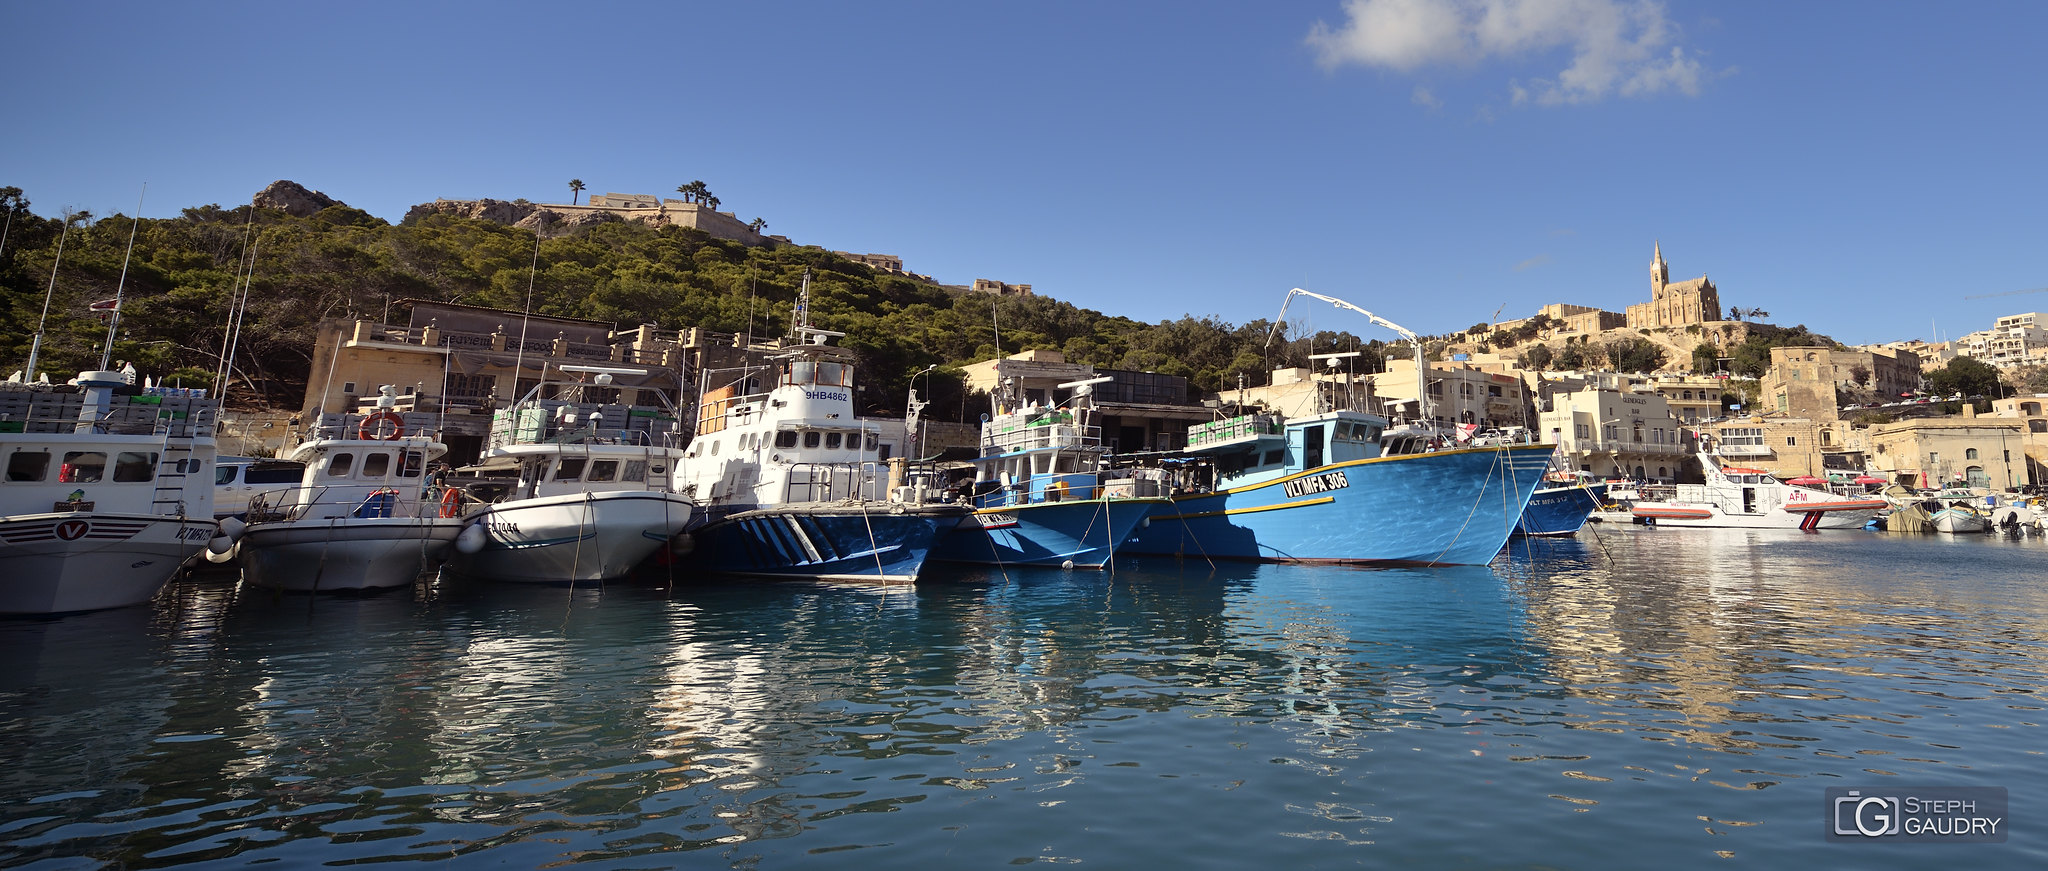 Le port de Għajnsielem à Gozo [Klicken Sie hier, um die Diashow zu starten]